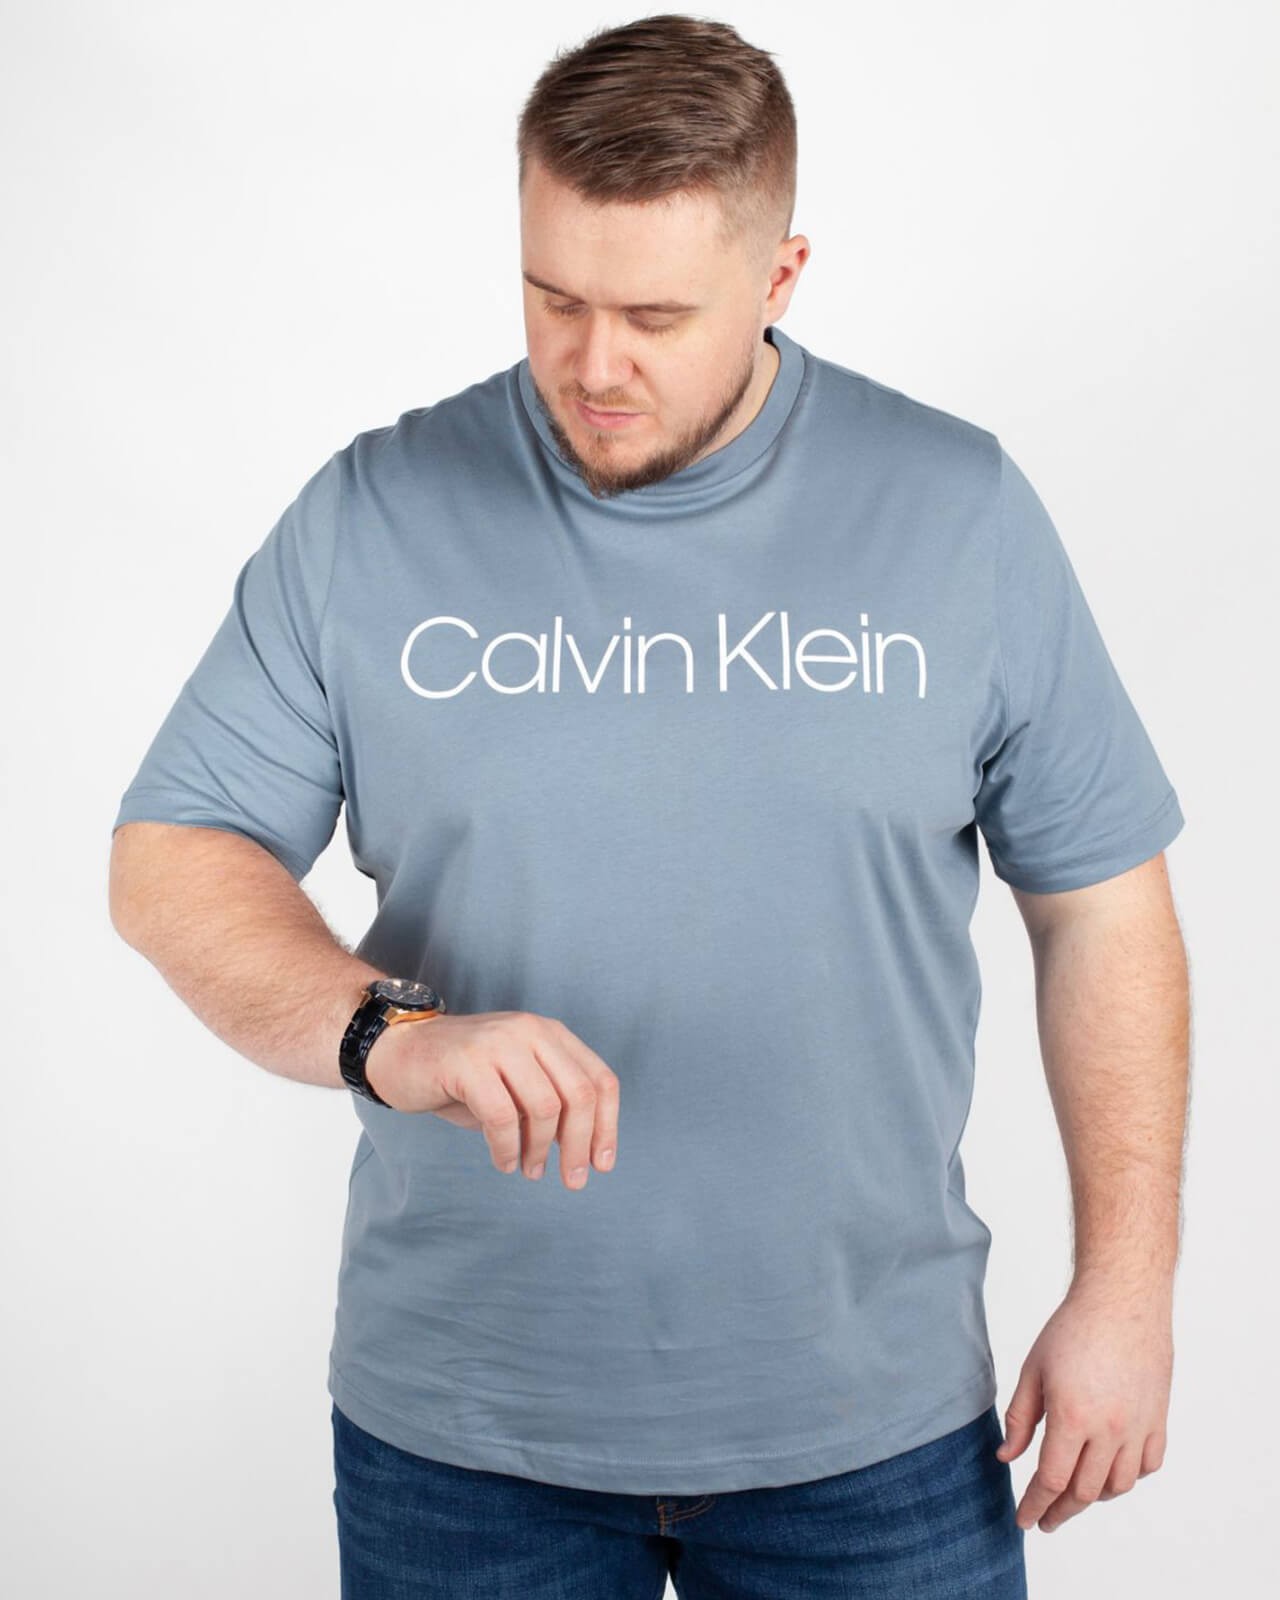 T-Shirt Grande Taille Homme 4XL Calvin Klein